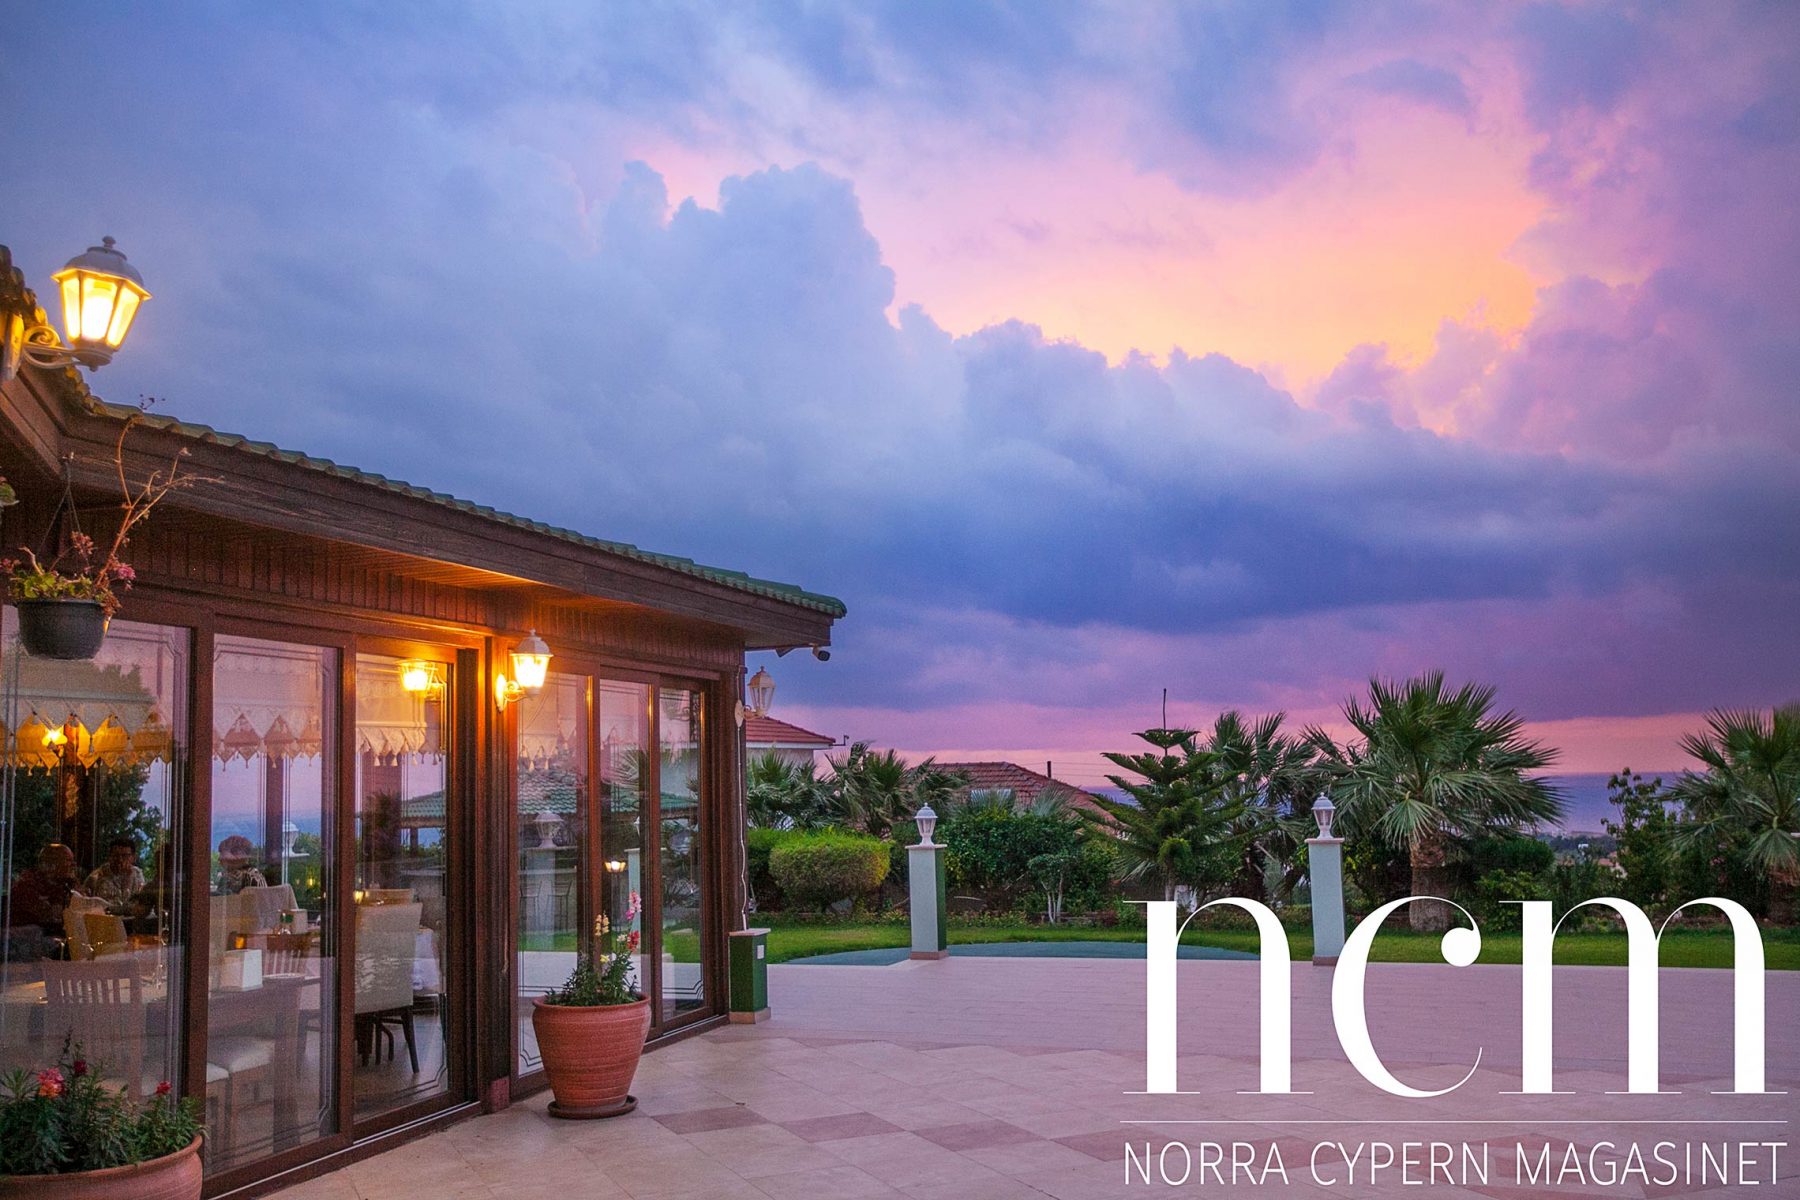 Fantastisk solnedgång vid Canos Green Palace på Norra Cypern